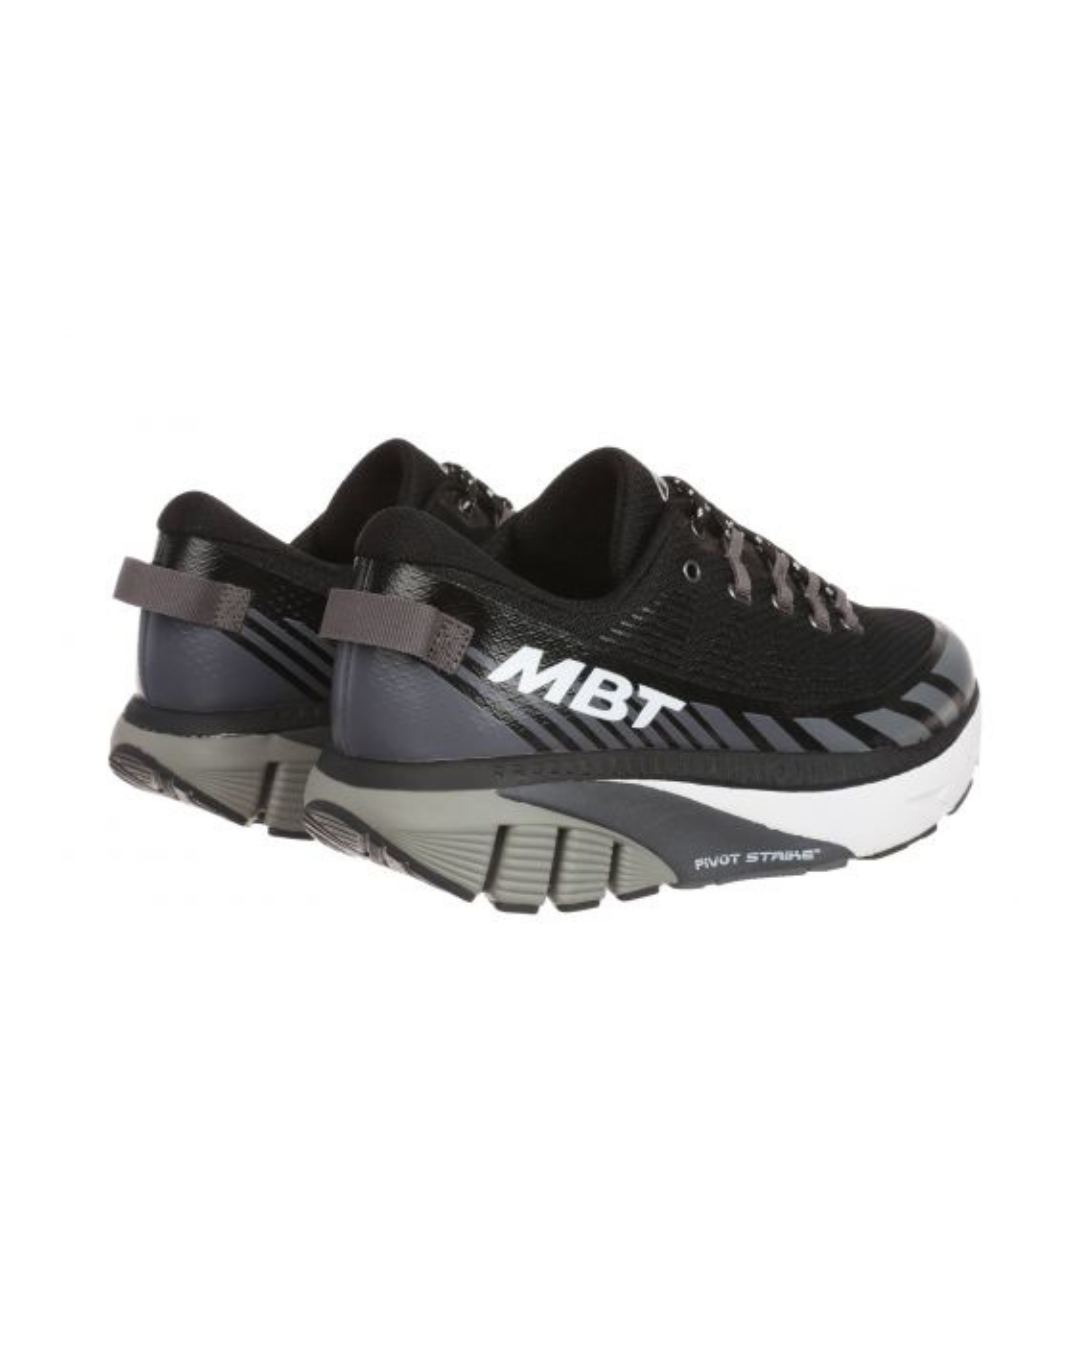 MBT MTR-1500 trainer scarpe da corsa uomo